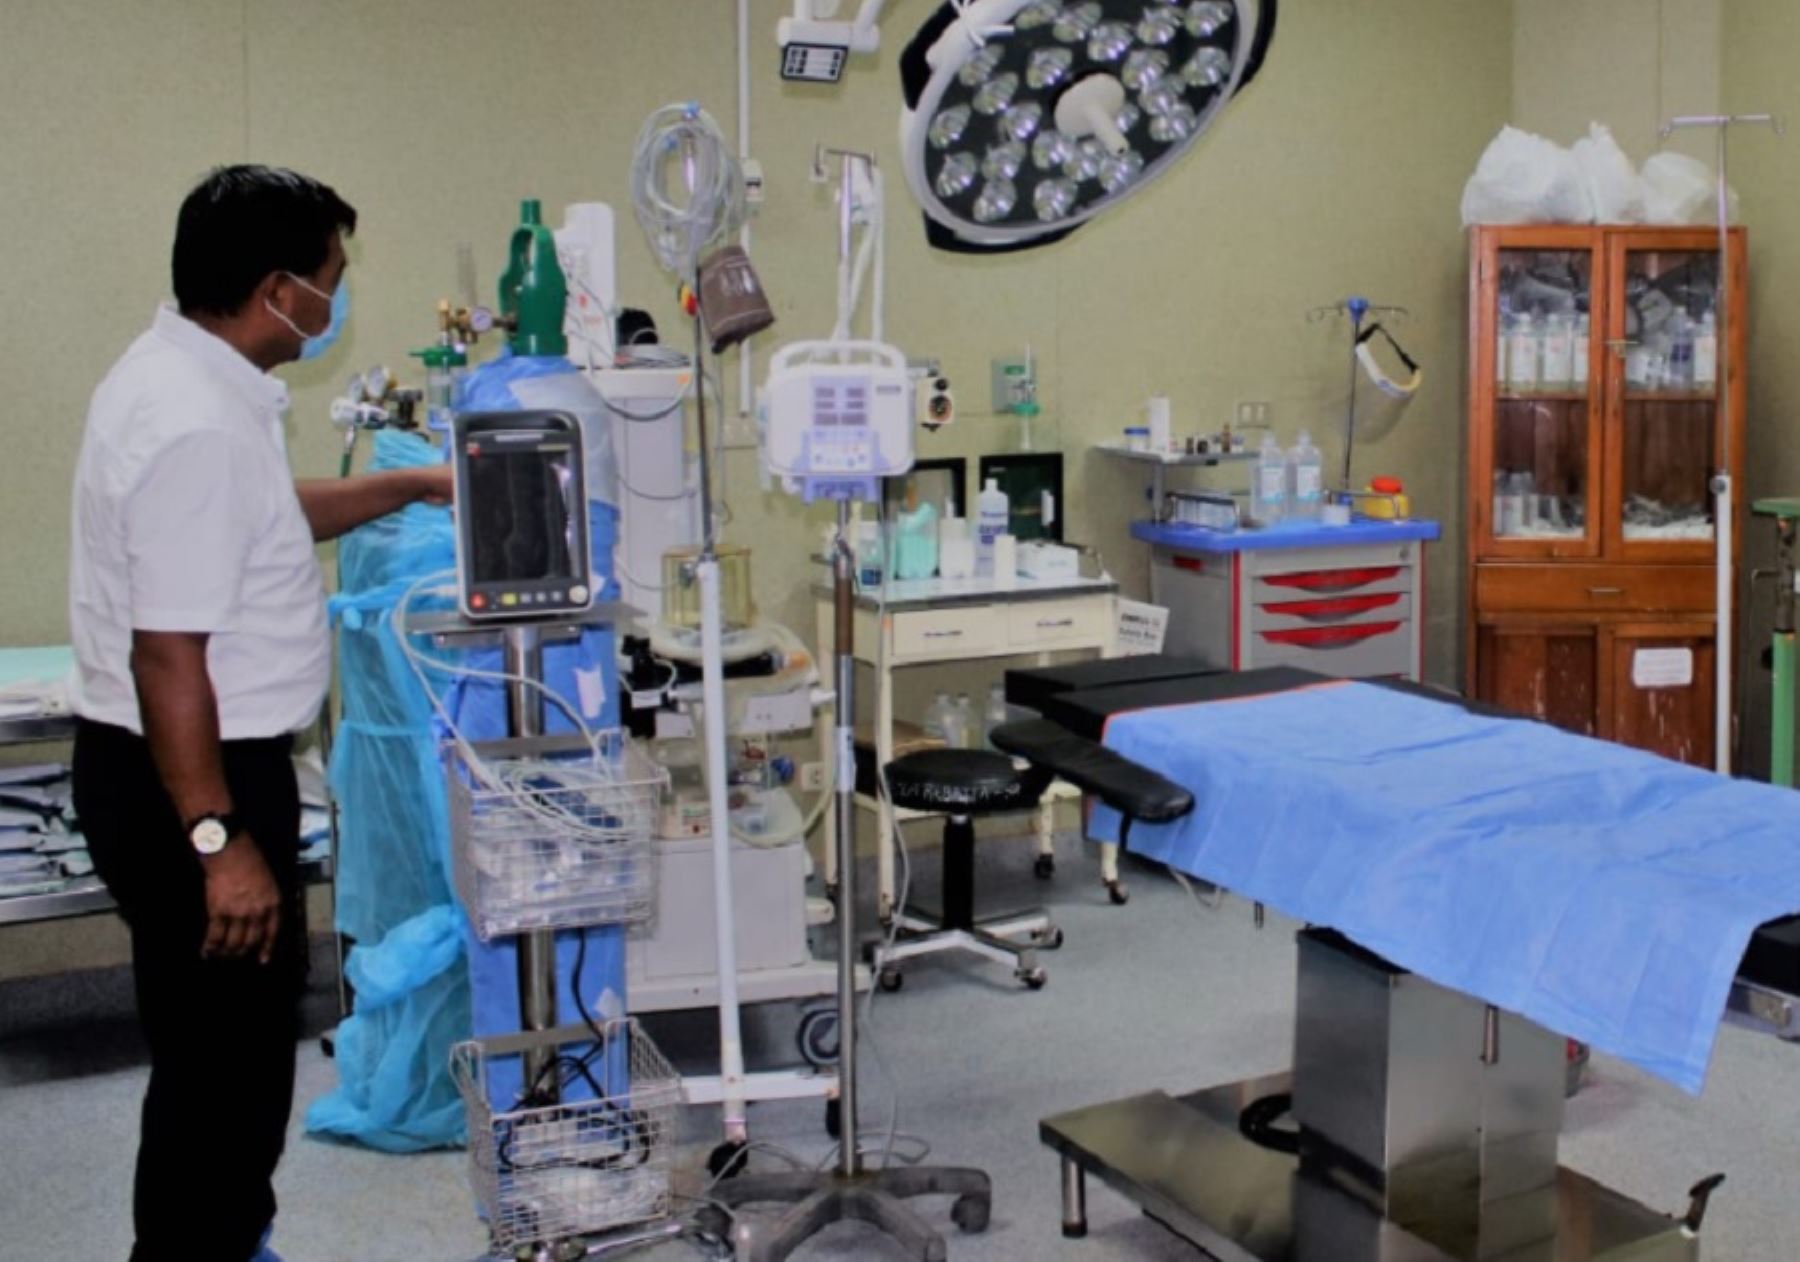 Con el financiamiento del Gobierno Regional de Amazonas, la Red de Salud Condorcanqui adquirió importantes equipos médicos que implementará el Centro Quirúrgico y la Central de Esterilización del Hospital I de Santa María de Nieva.